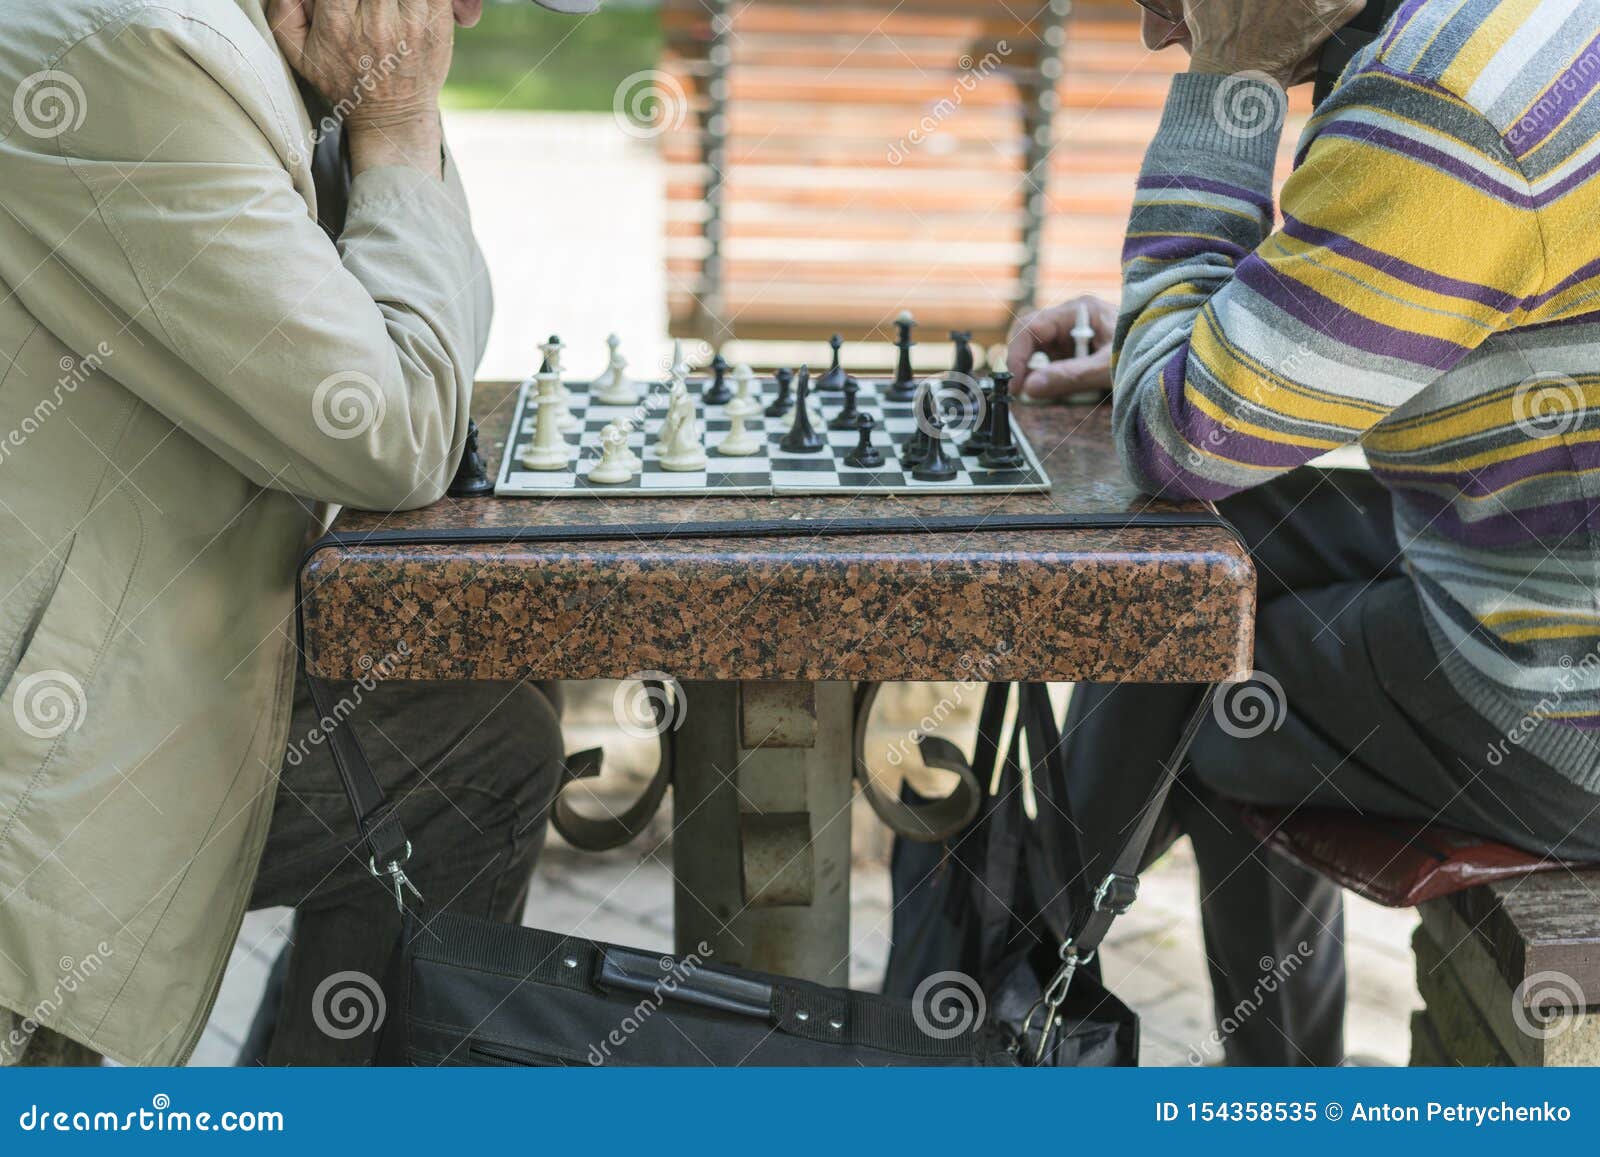 amigos del ajedrez